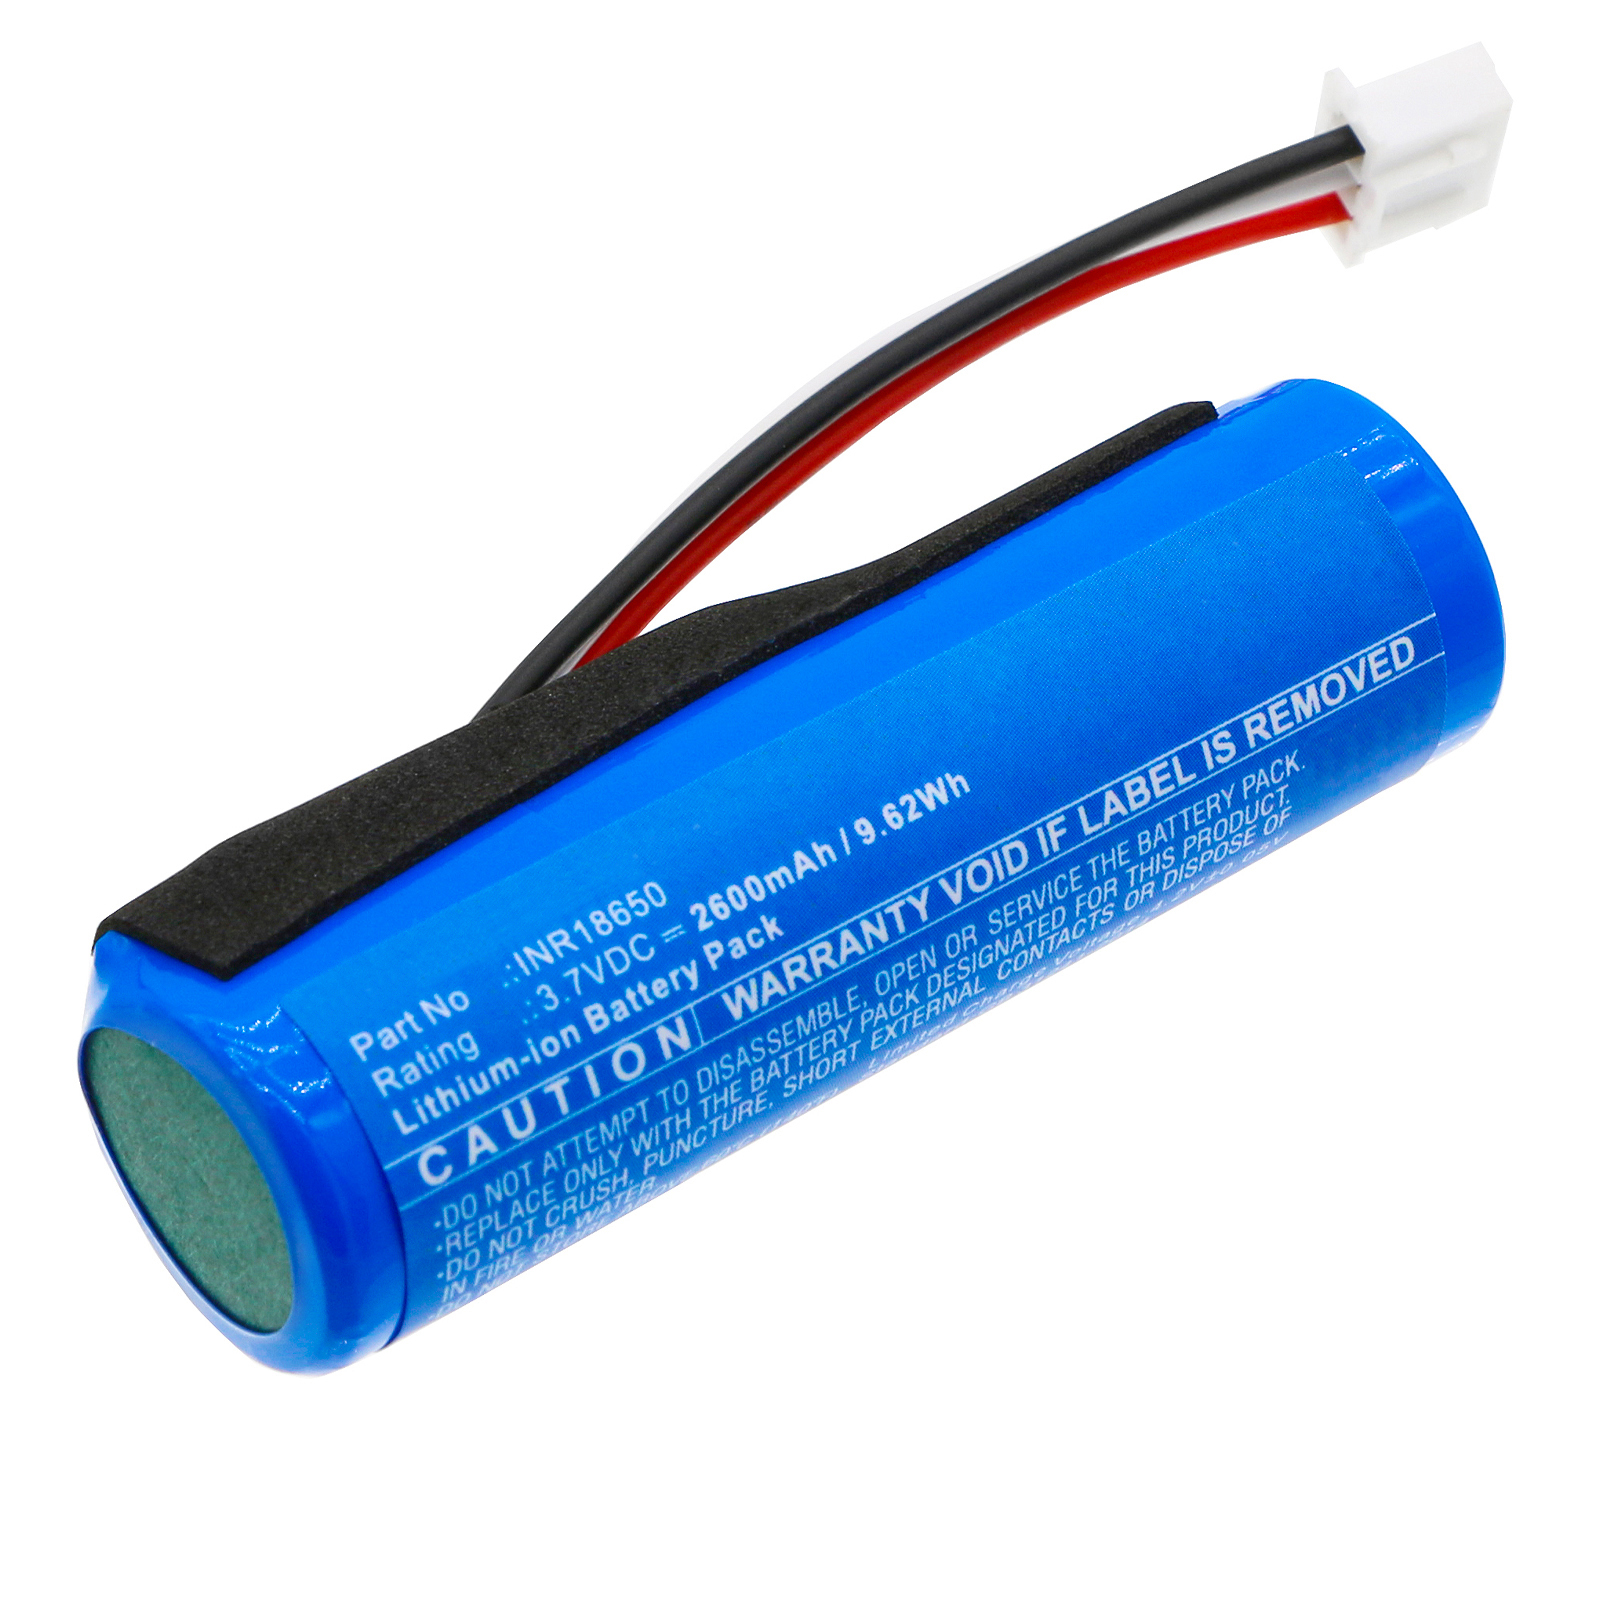 Batteries for BlaupunktSpeaker